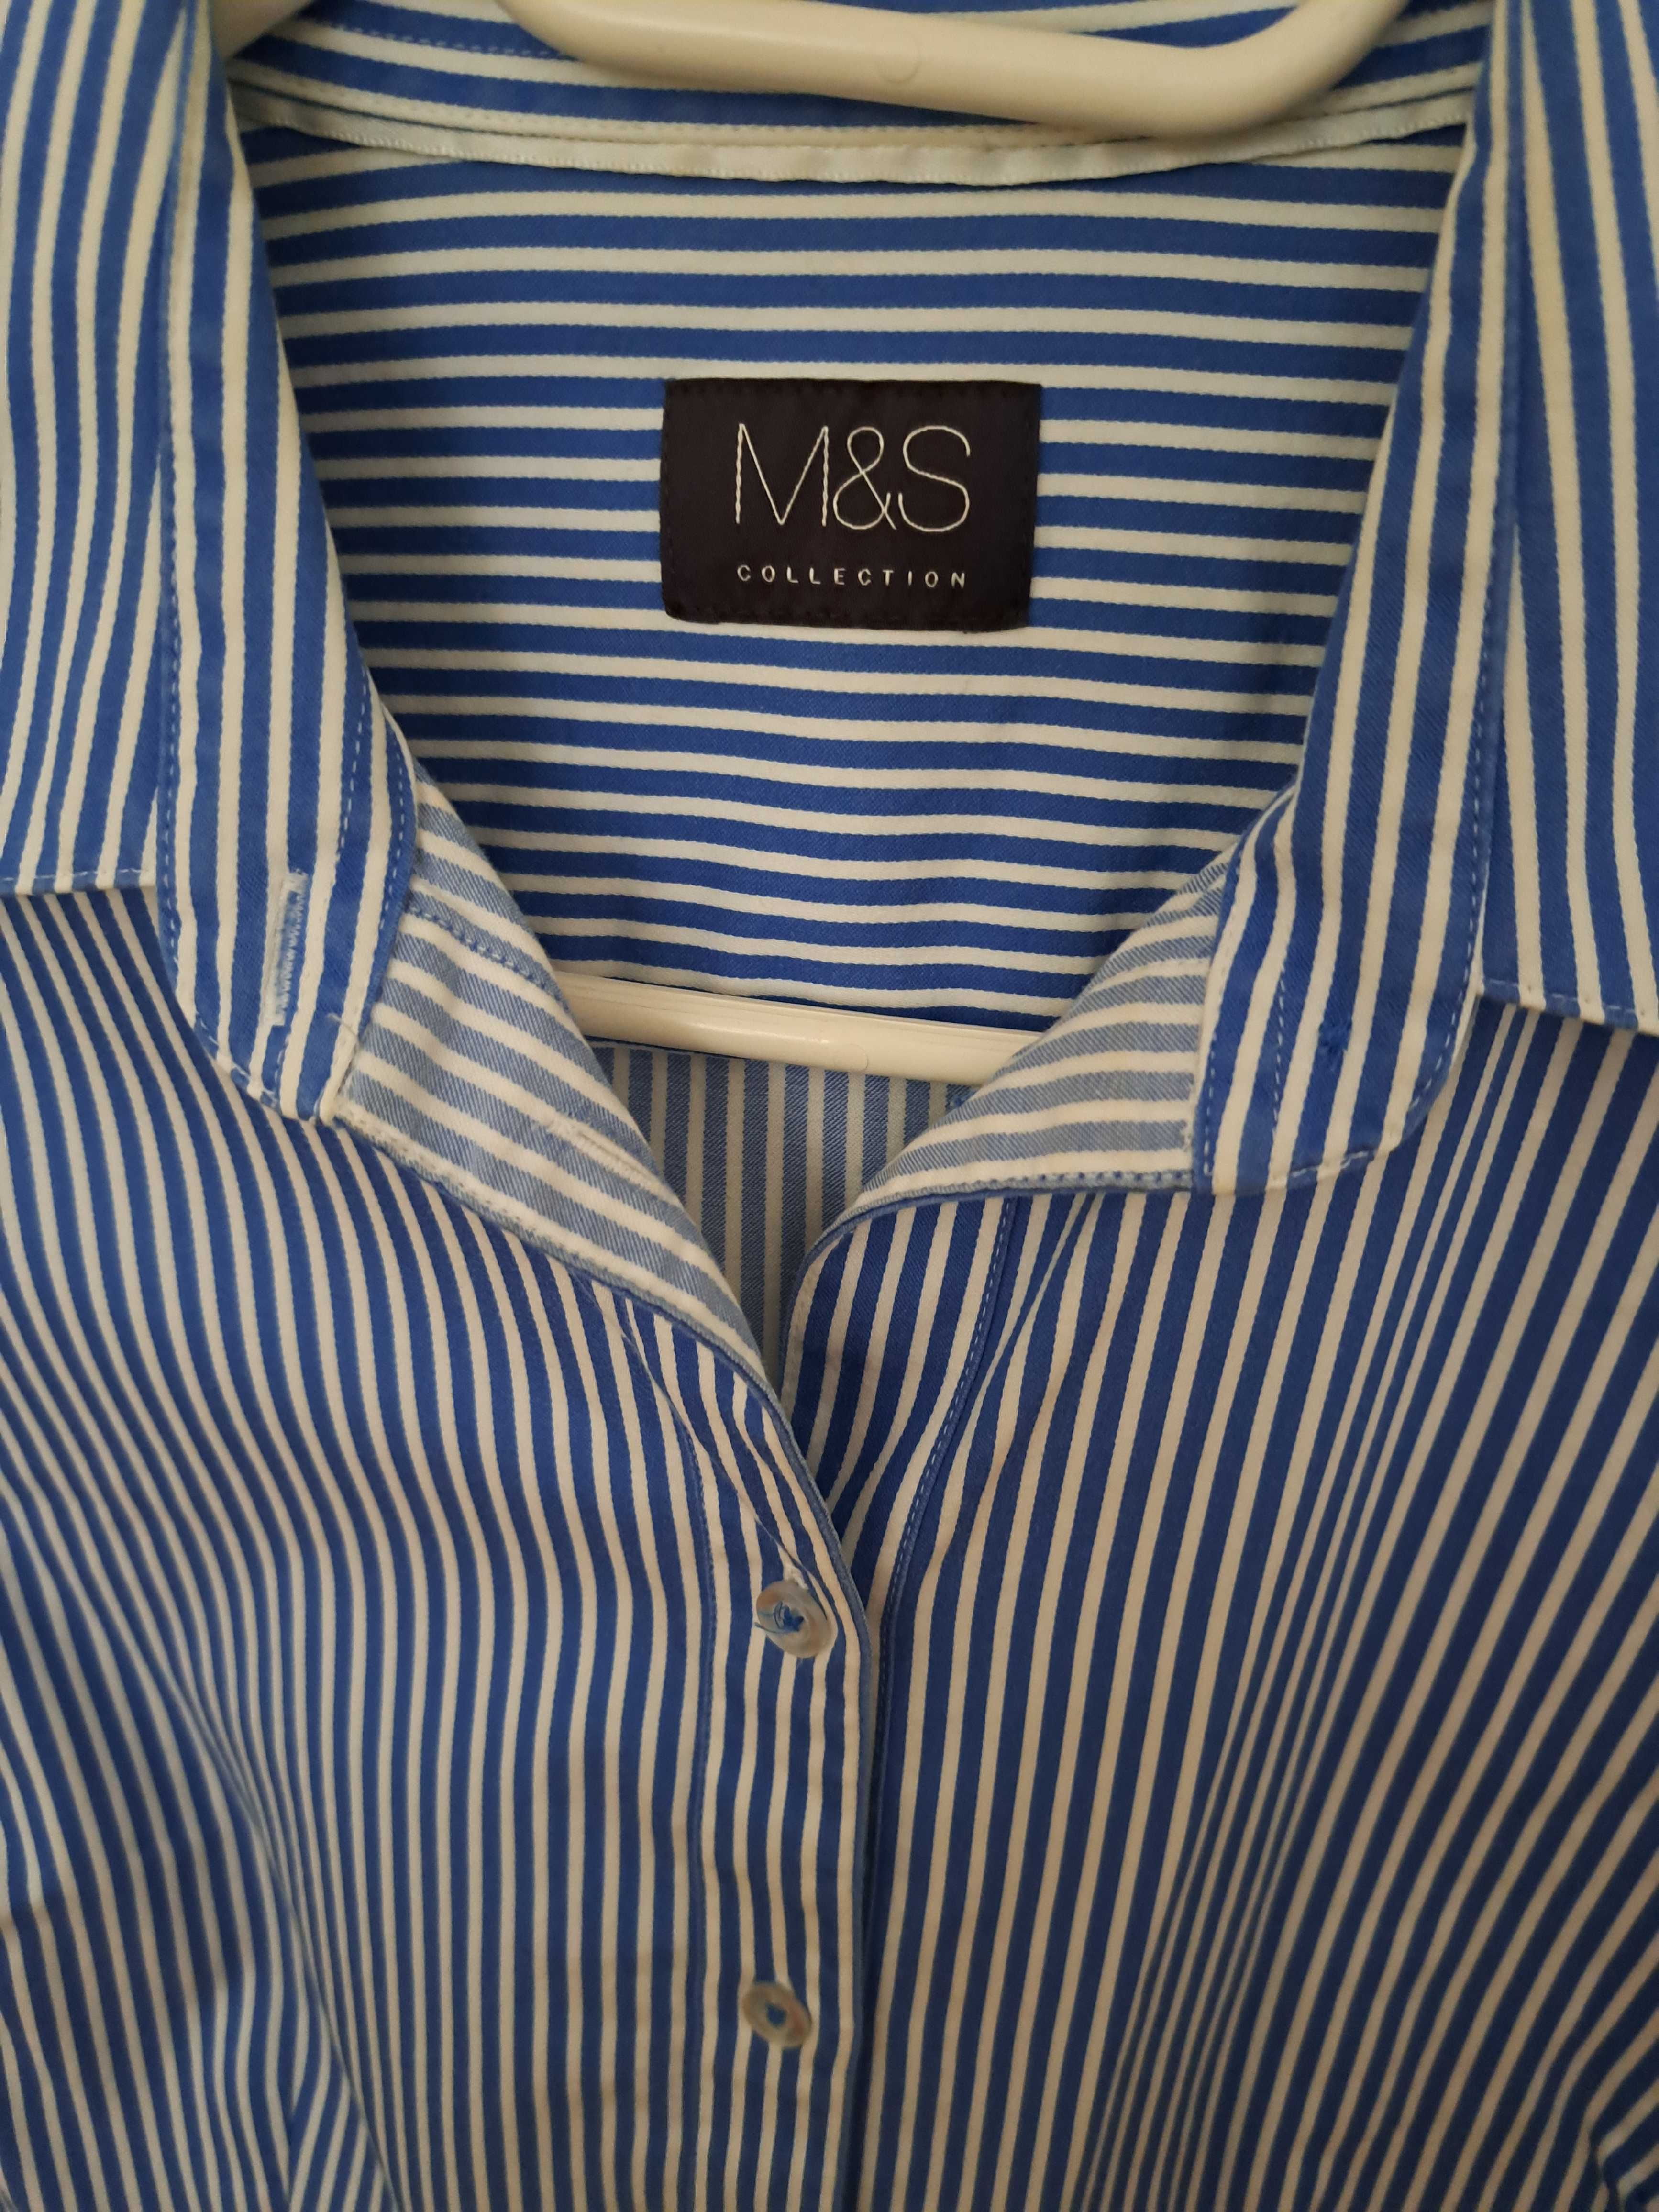 Damska koszula w paski M&S Collection roz. XS/S 100% bawełna